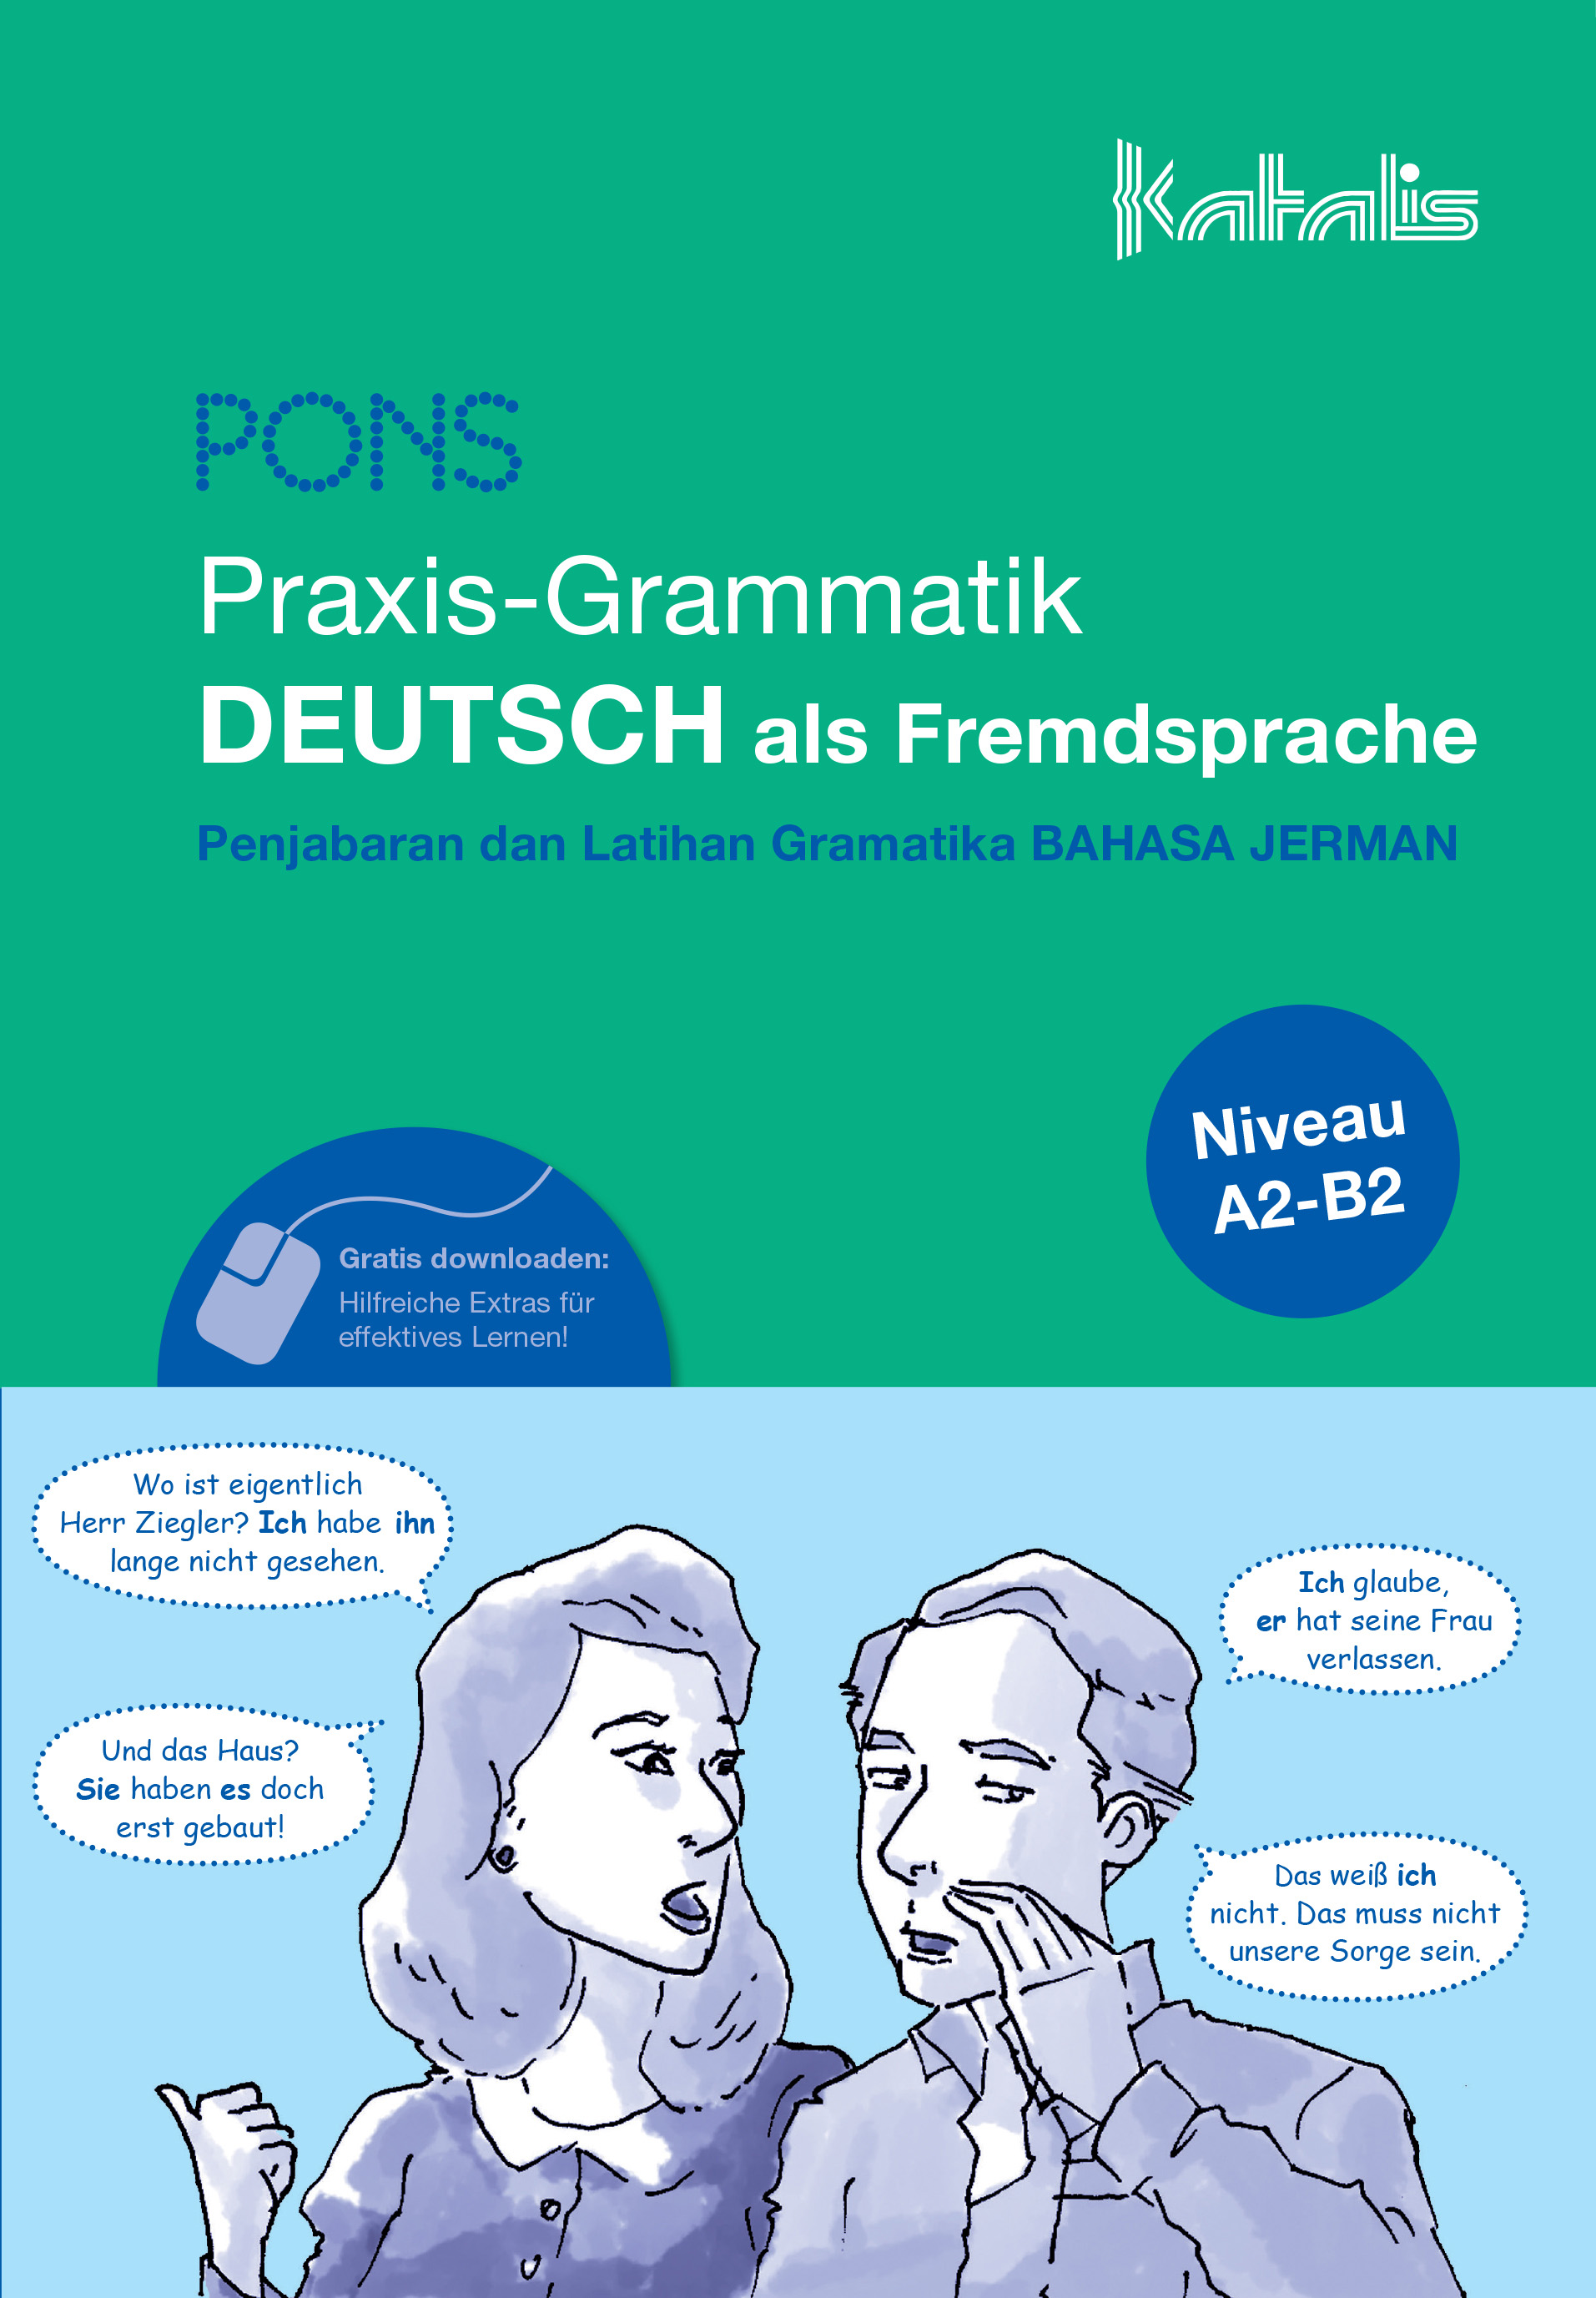 Praxis-Grammatik DEUTSCH als Fremdsprache